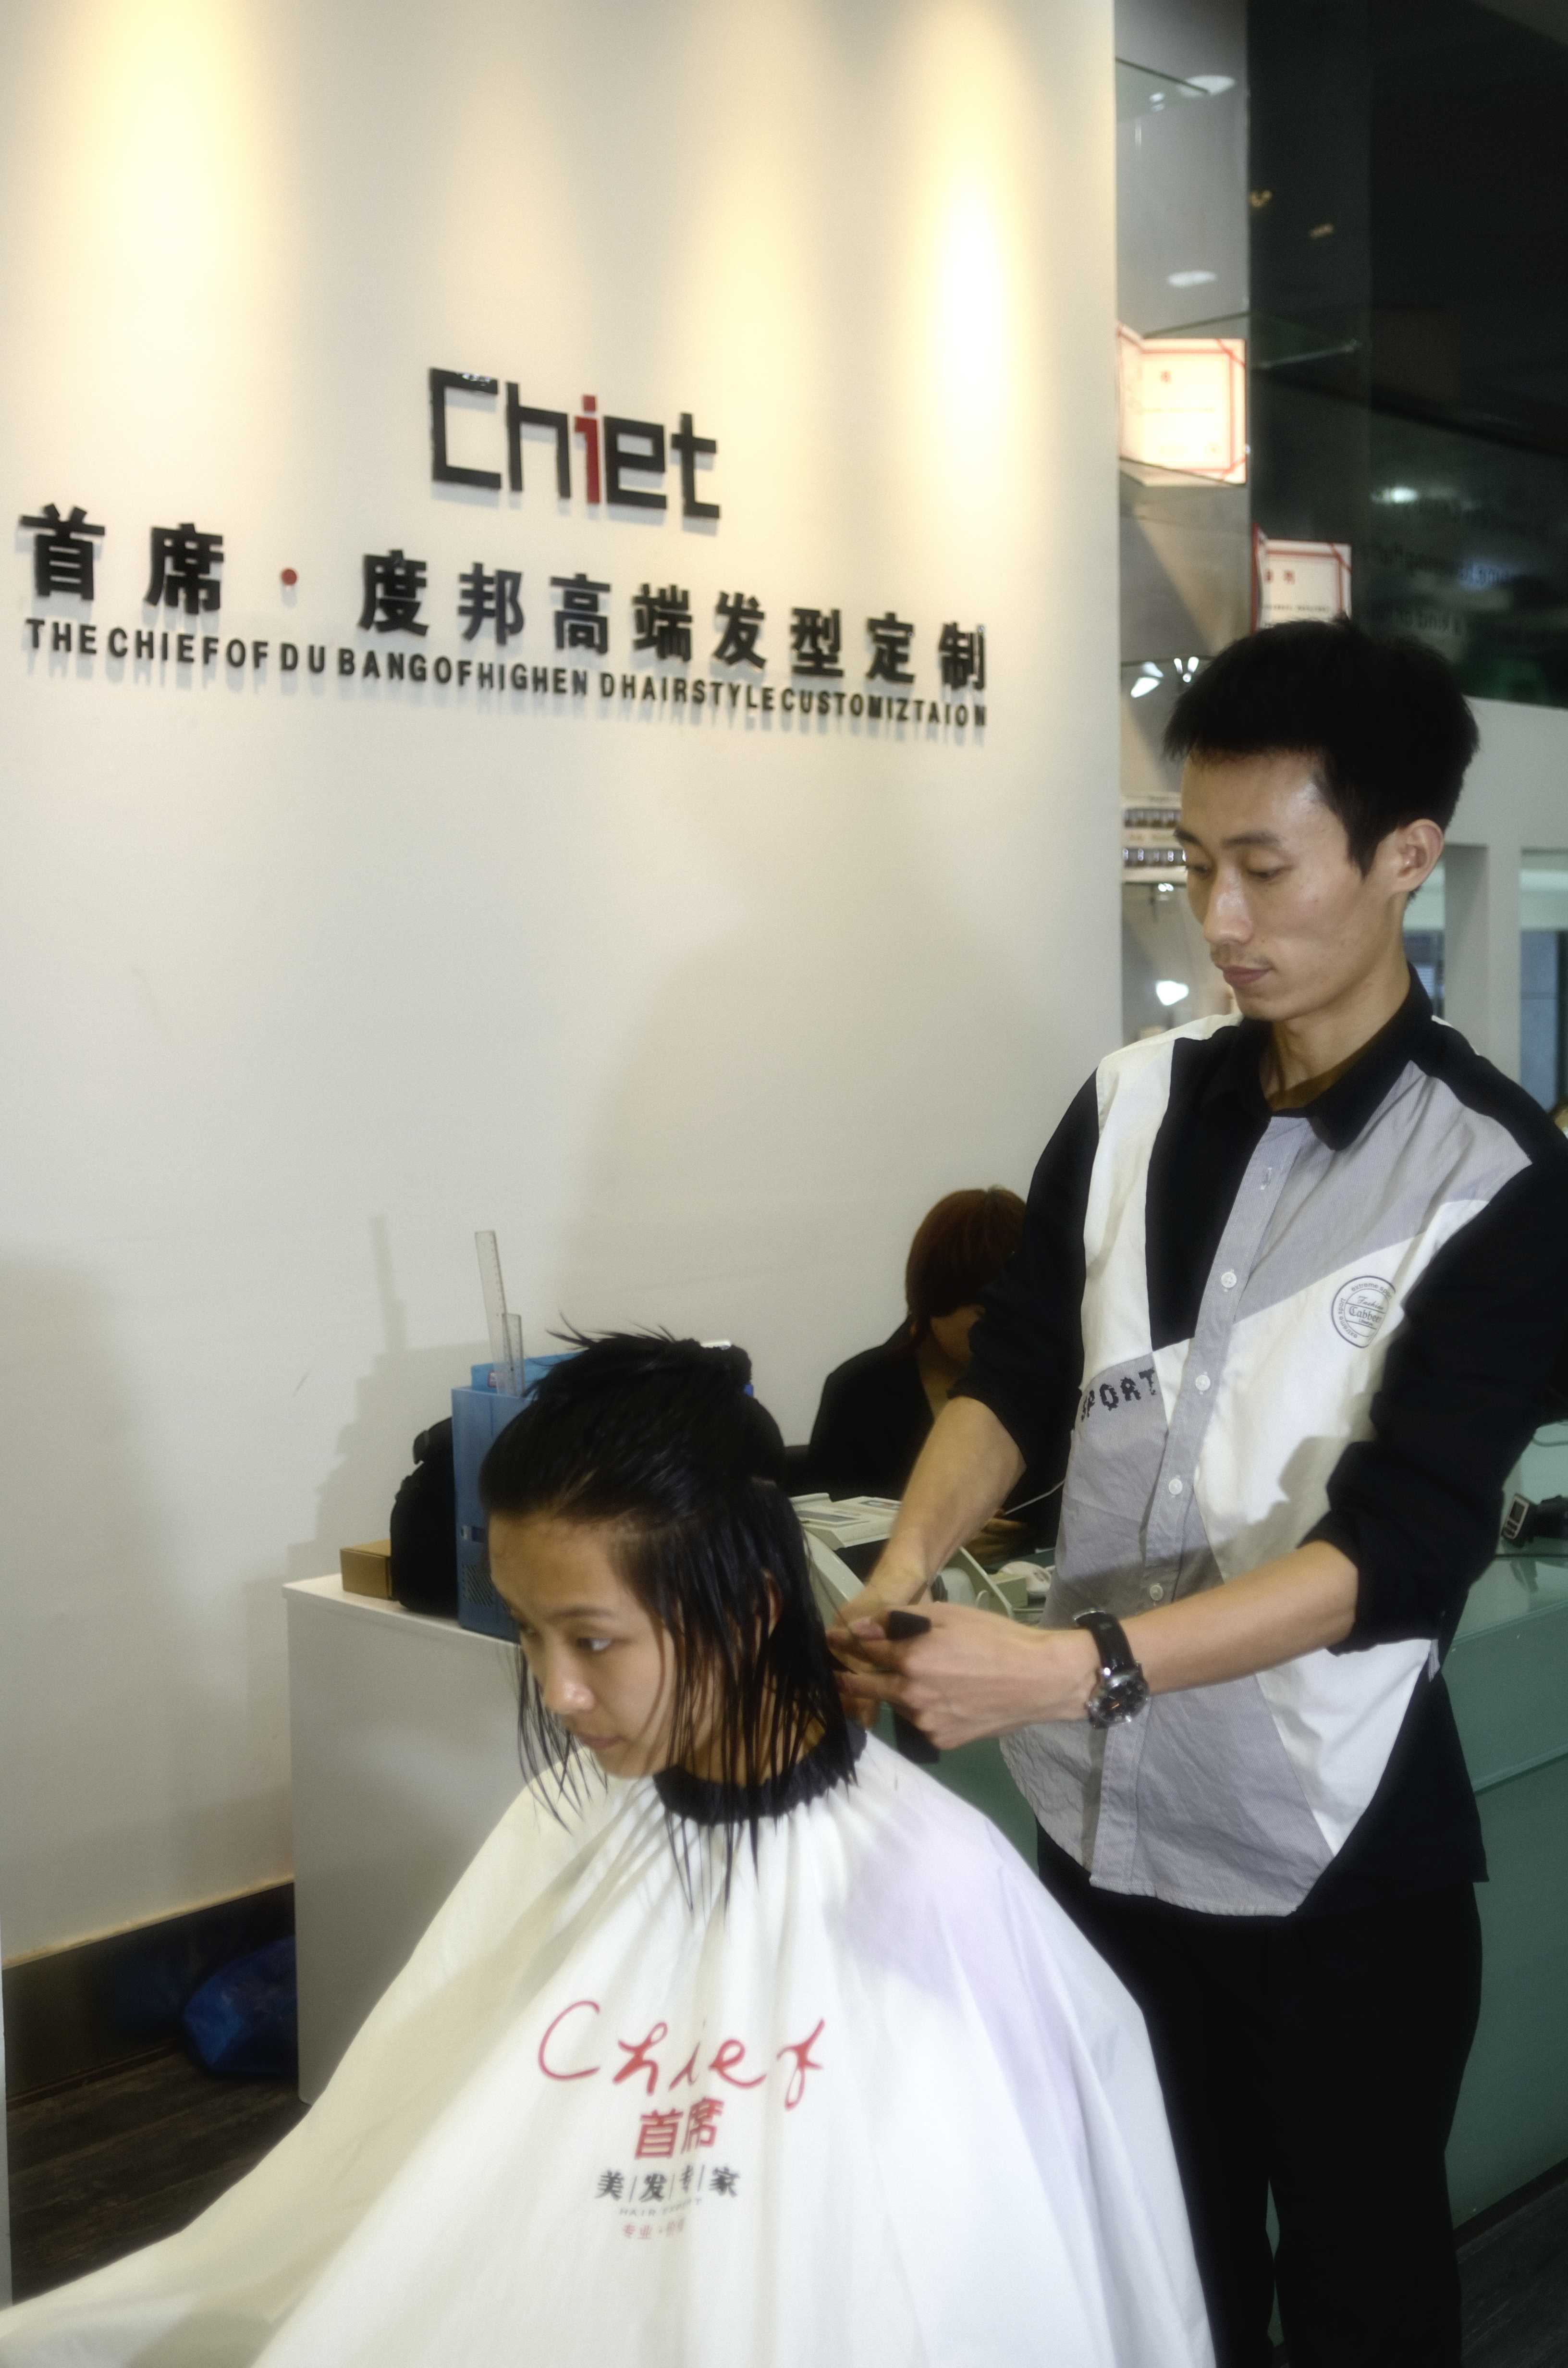 理发师给顾客理发-蓝牛仔影像-中国原创广告影像素材